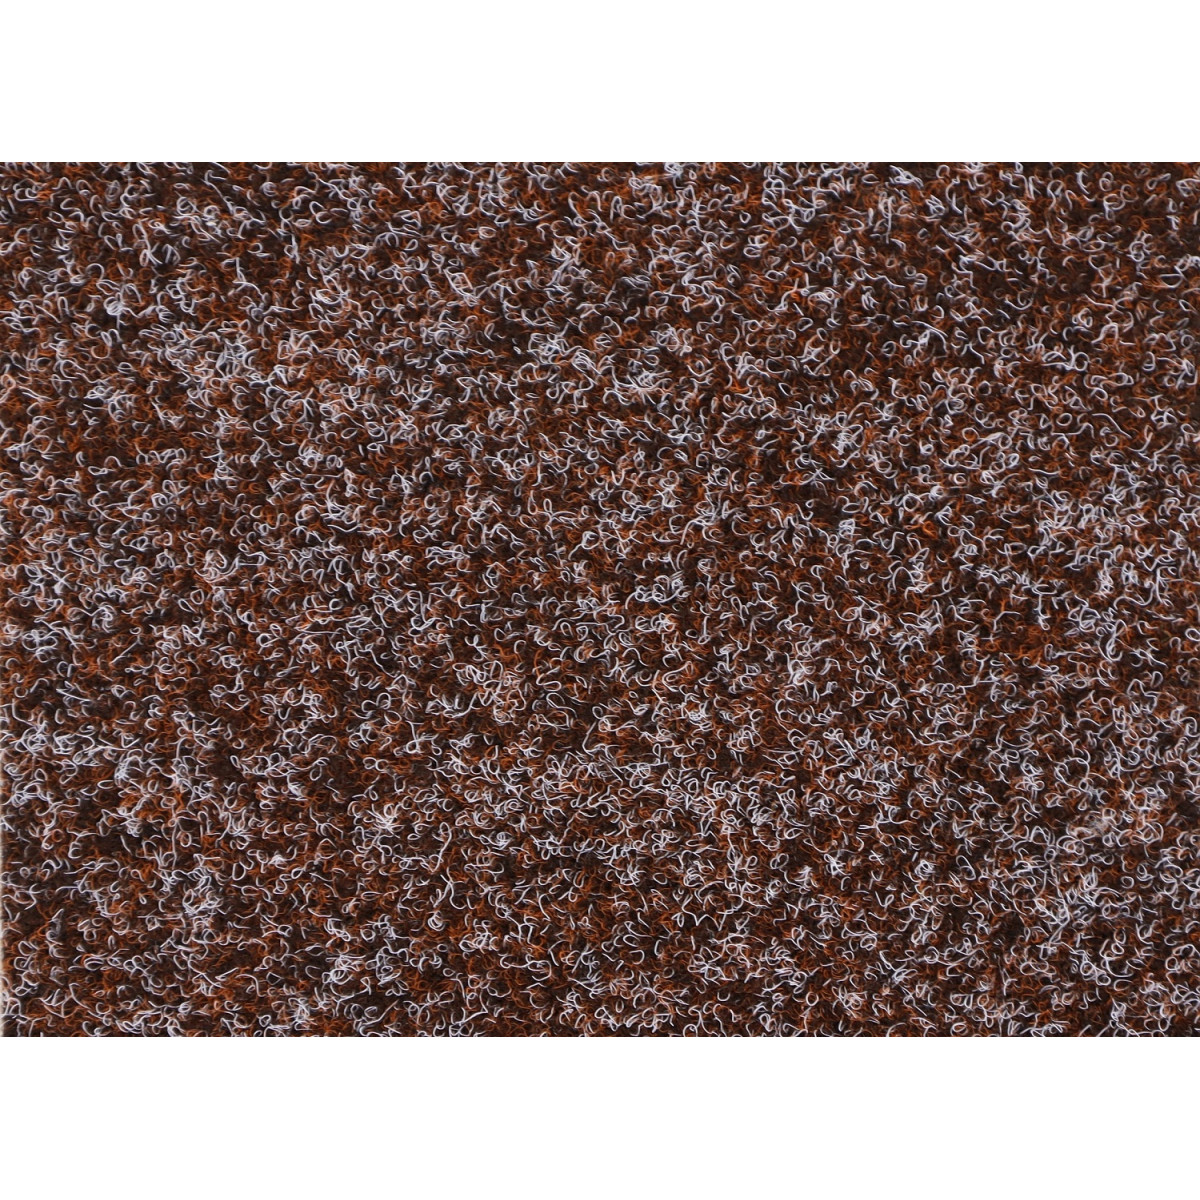 Metrážny koberec Santana čokoládová s podkladom resine, záťažový